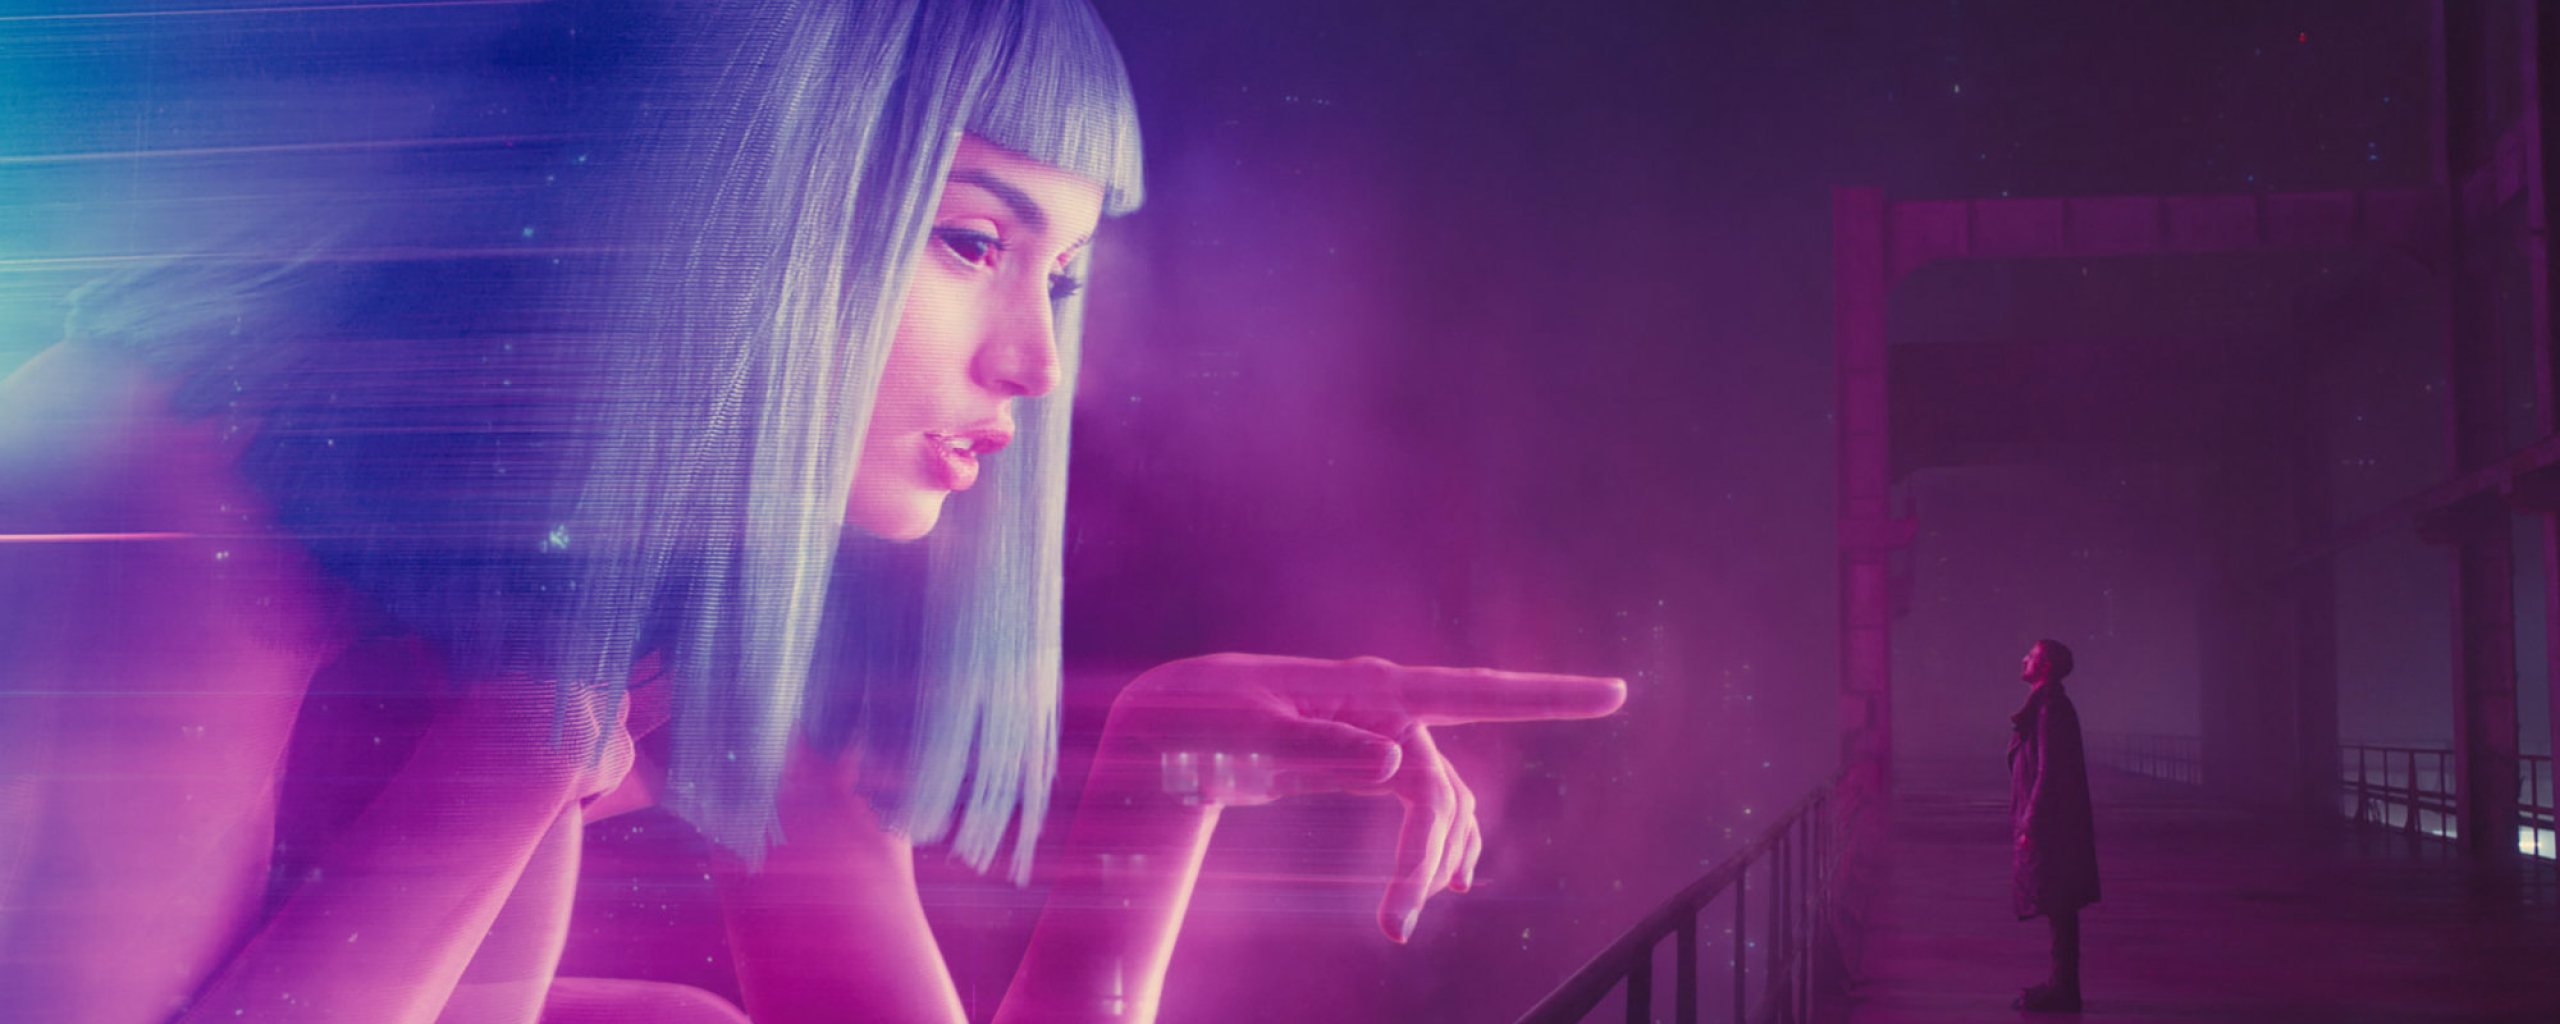 Blade Runner 2049 Movie Joi And K, Full HD 2K Wallpaper